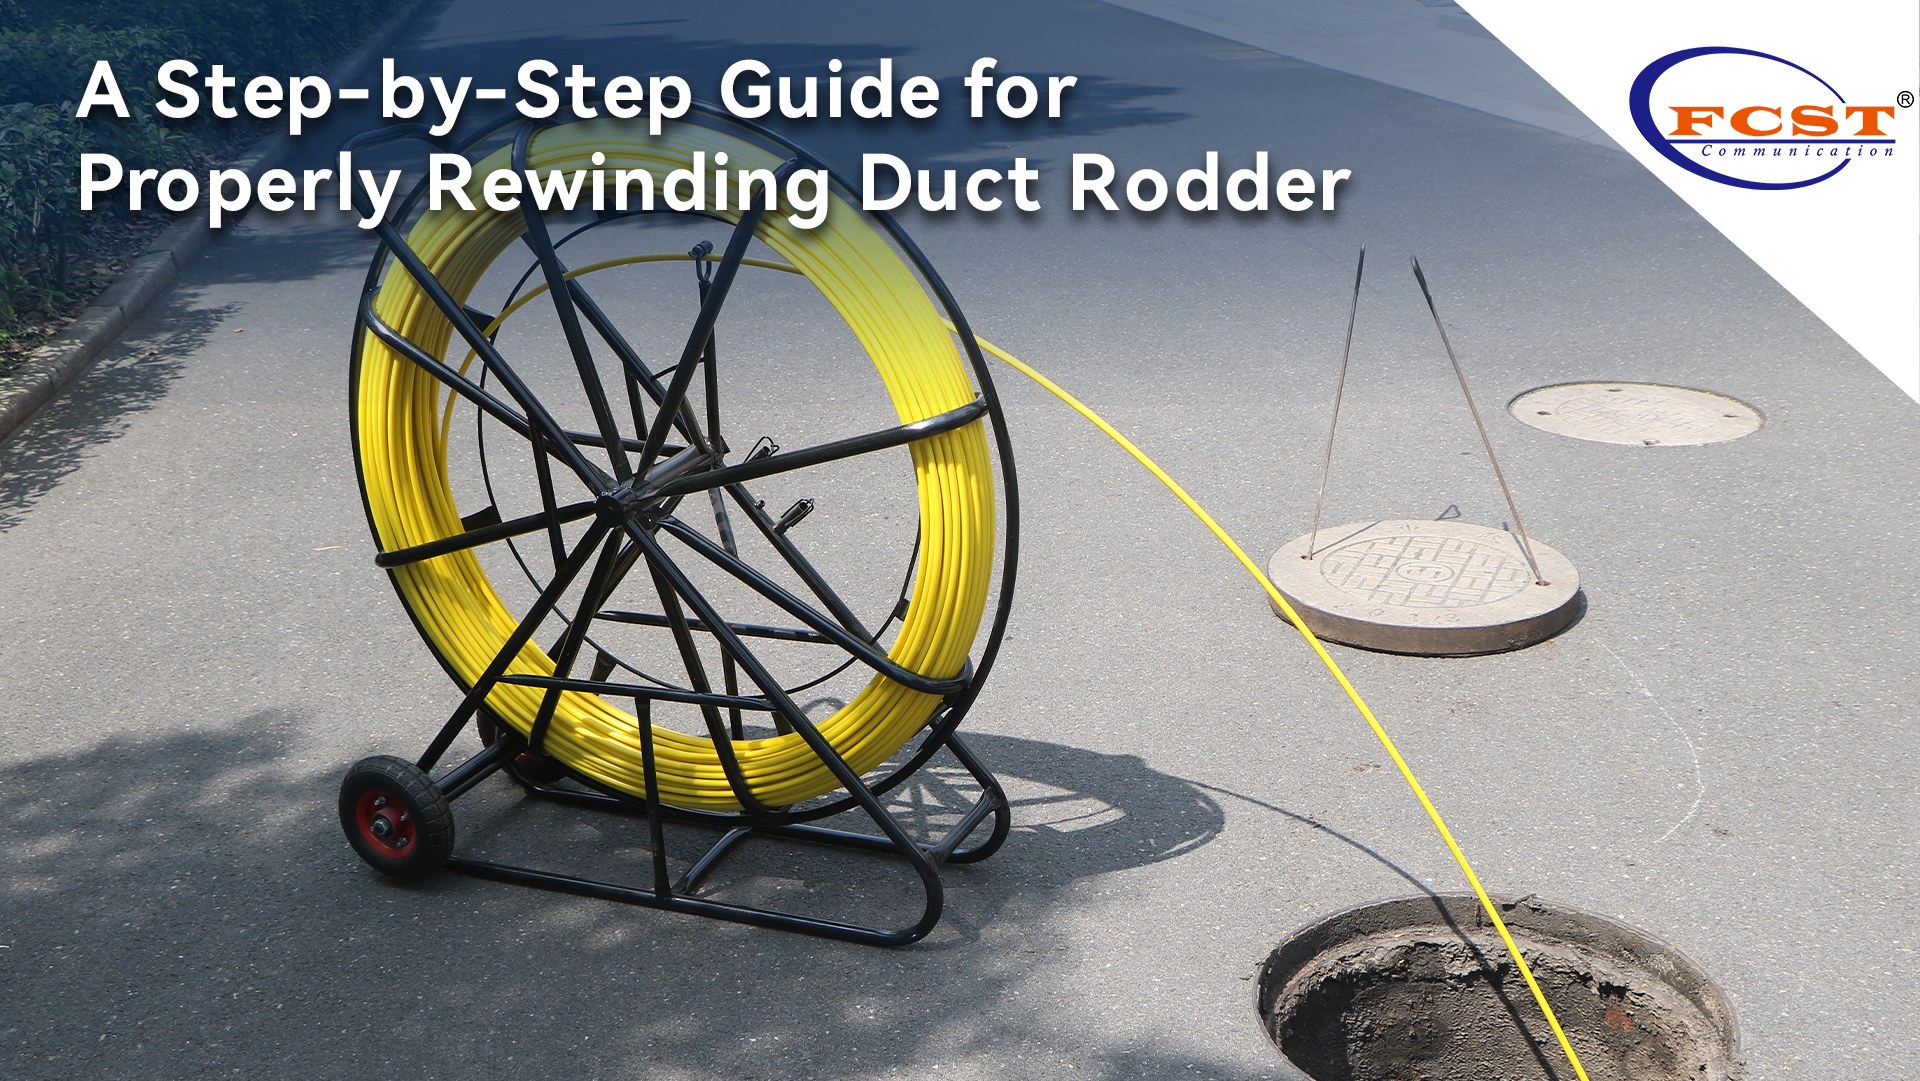 Una guía paso a paso para rebobinar adecuadamente el conducto Rodder